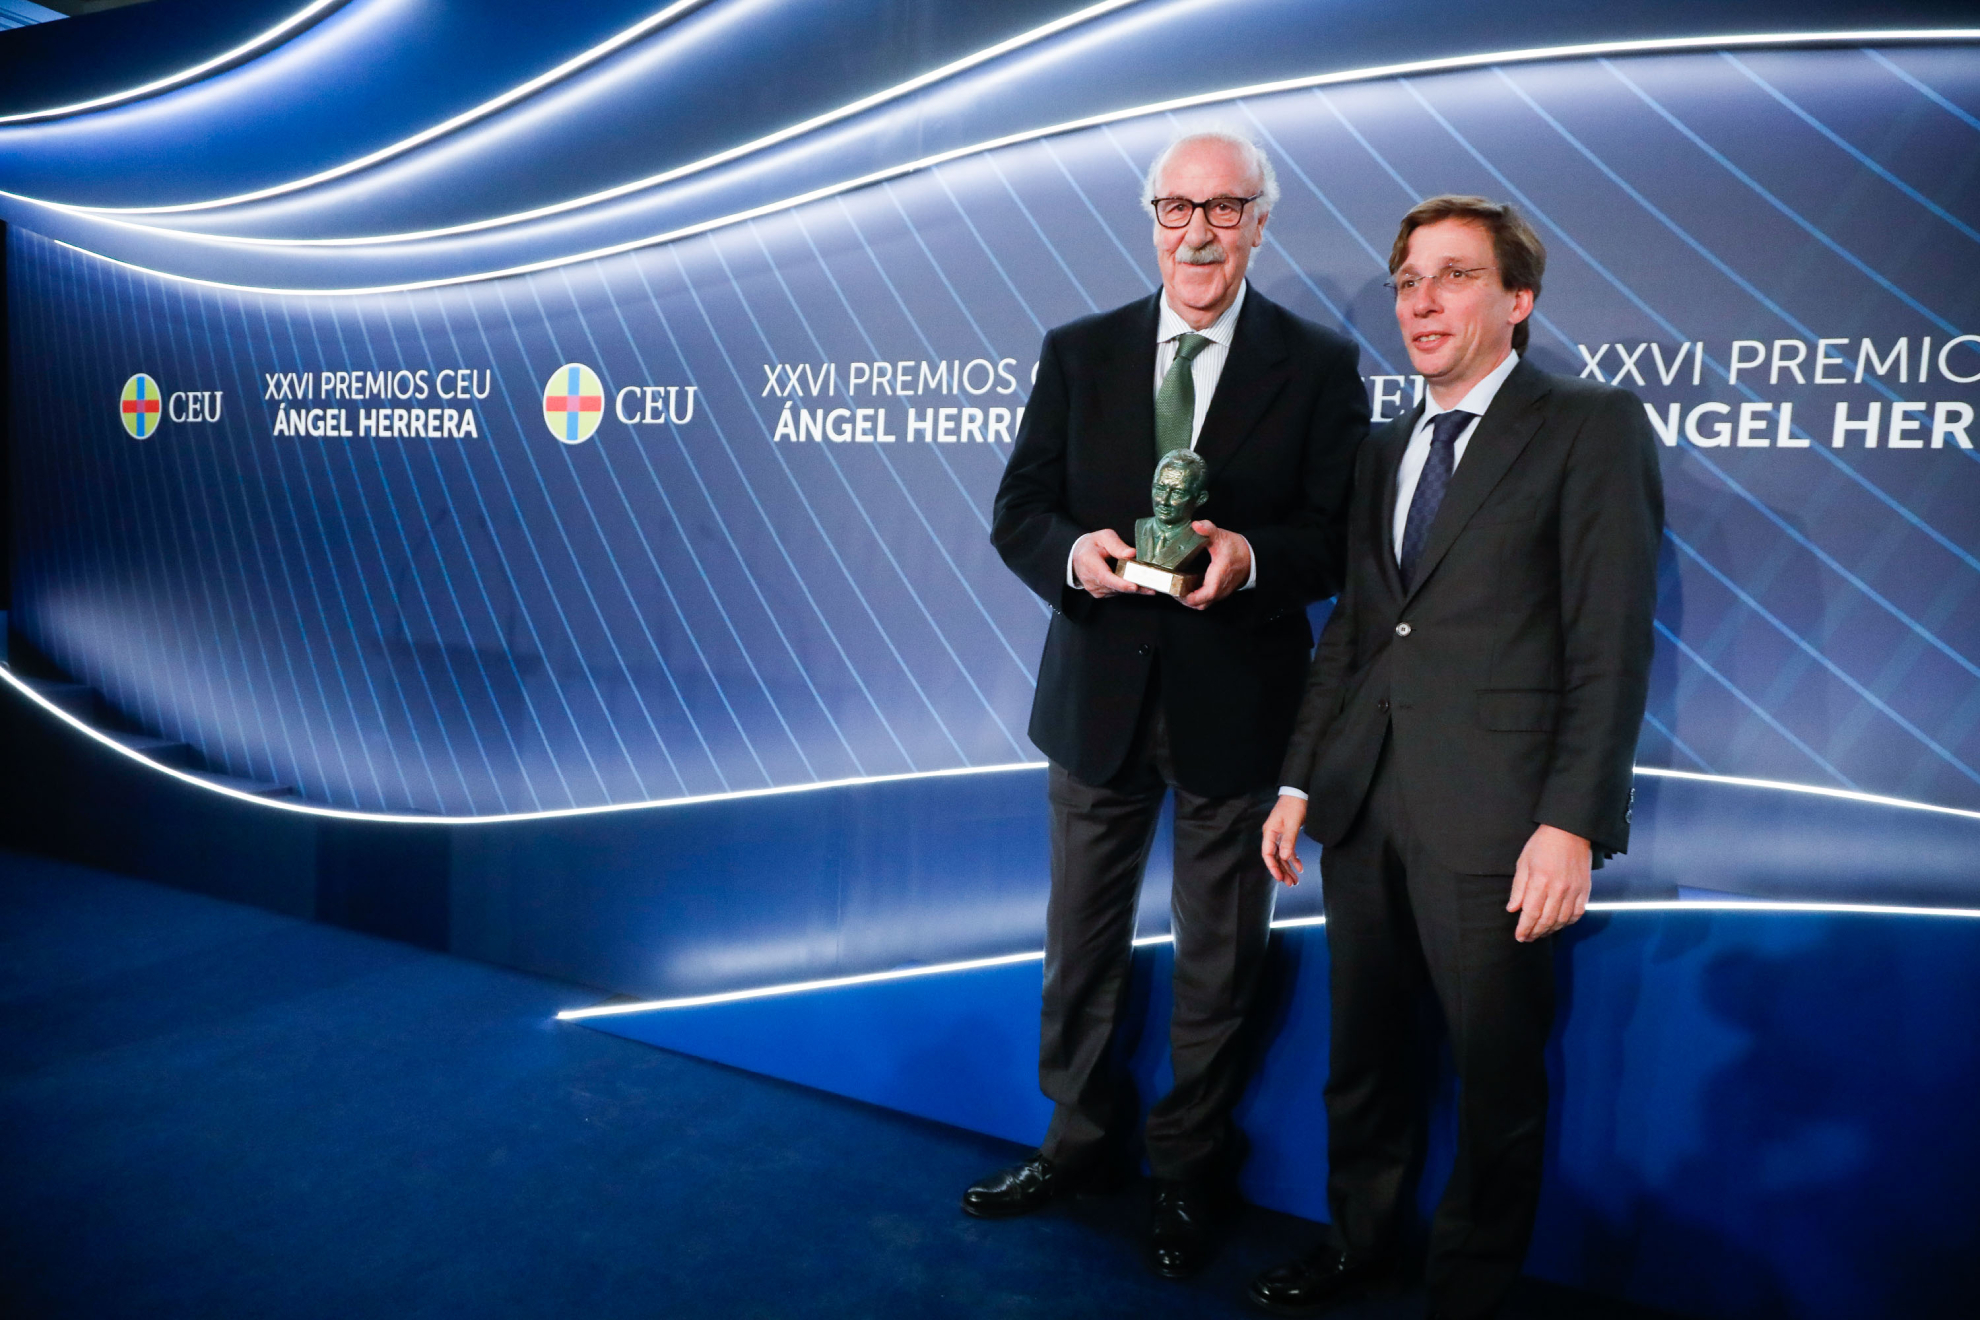 Vicente Del Bosque recibe el premio tica y Valores por su liderazgo humilde y sencillo